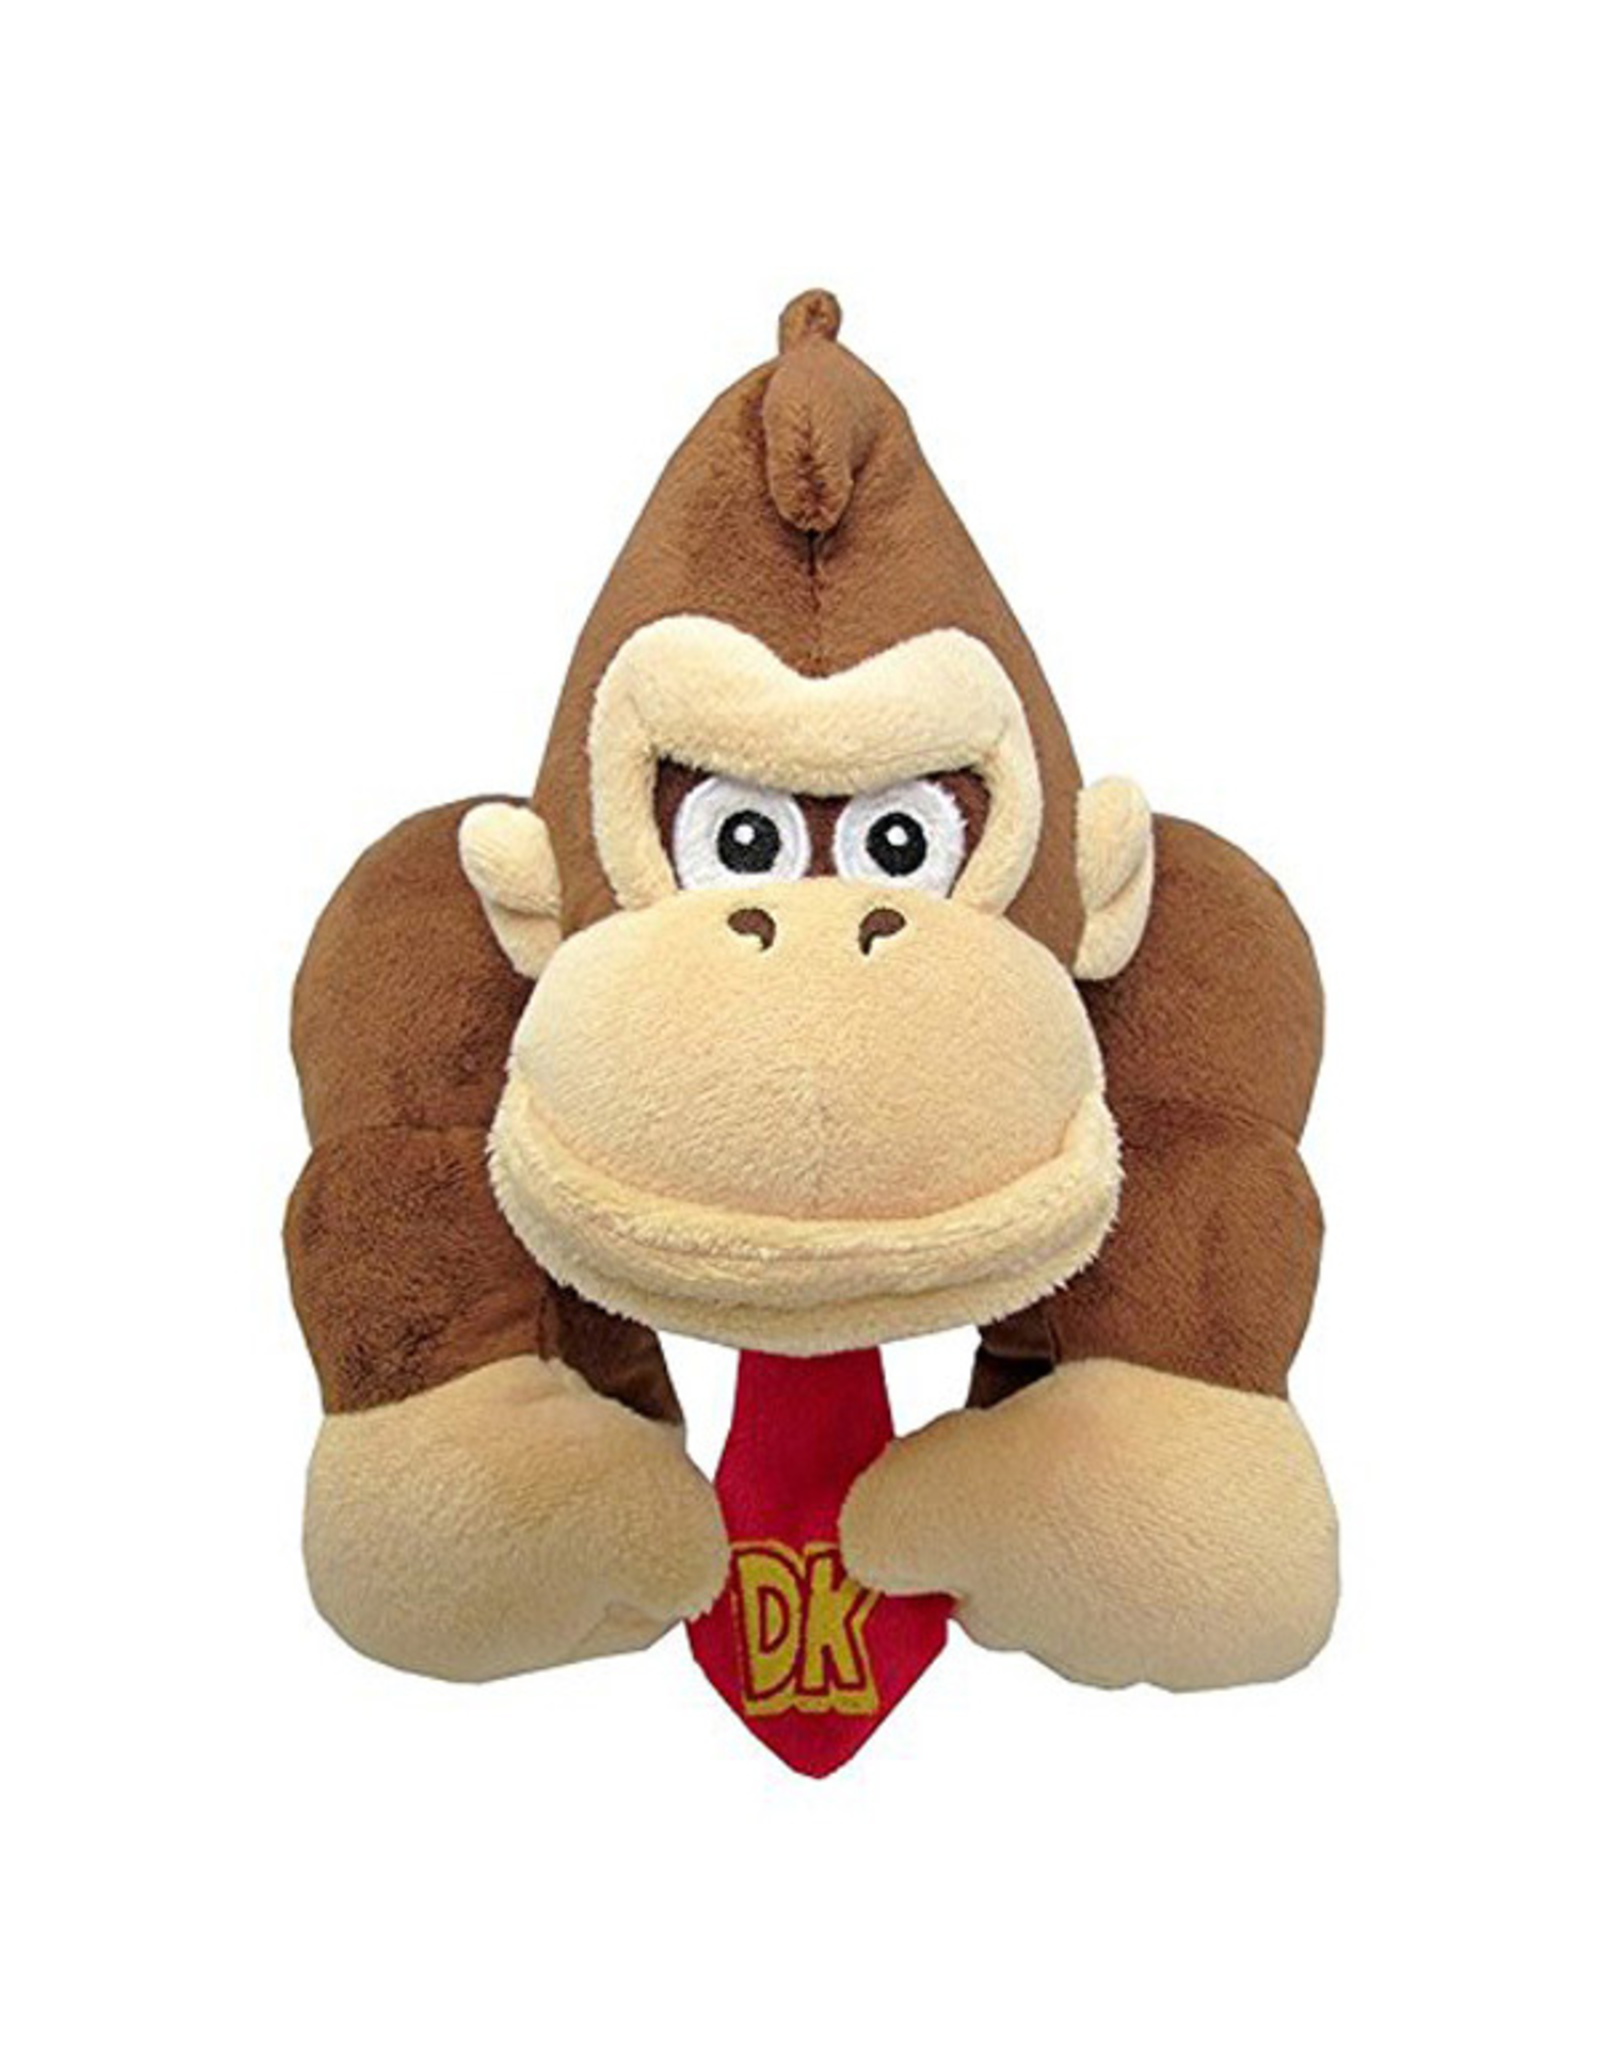 Little Buddy Donkey Kong - Donkey Kong - 8" Plush